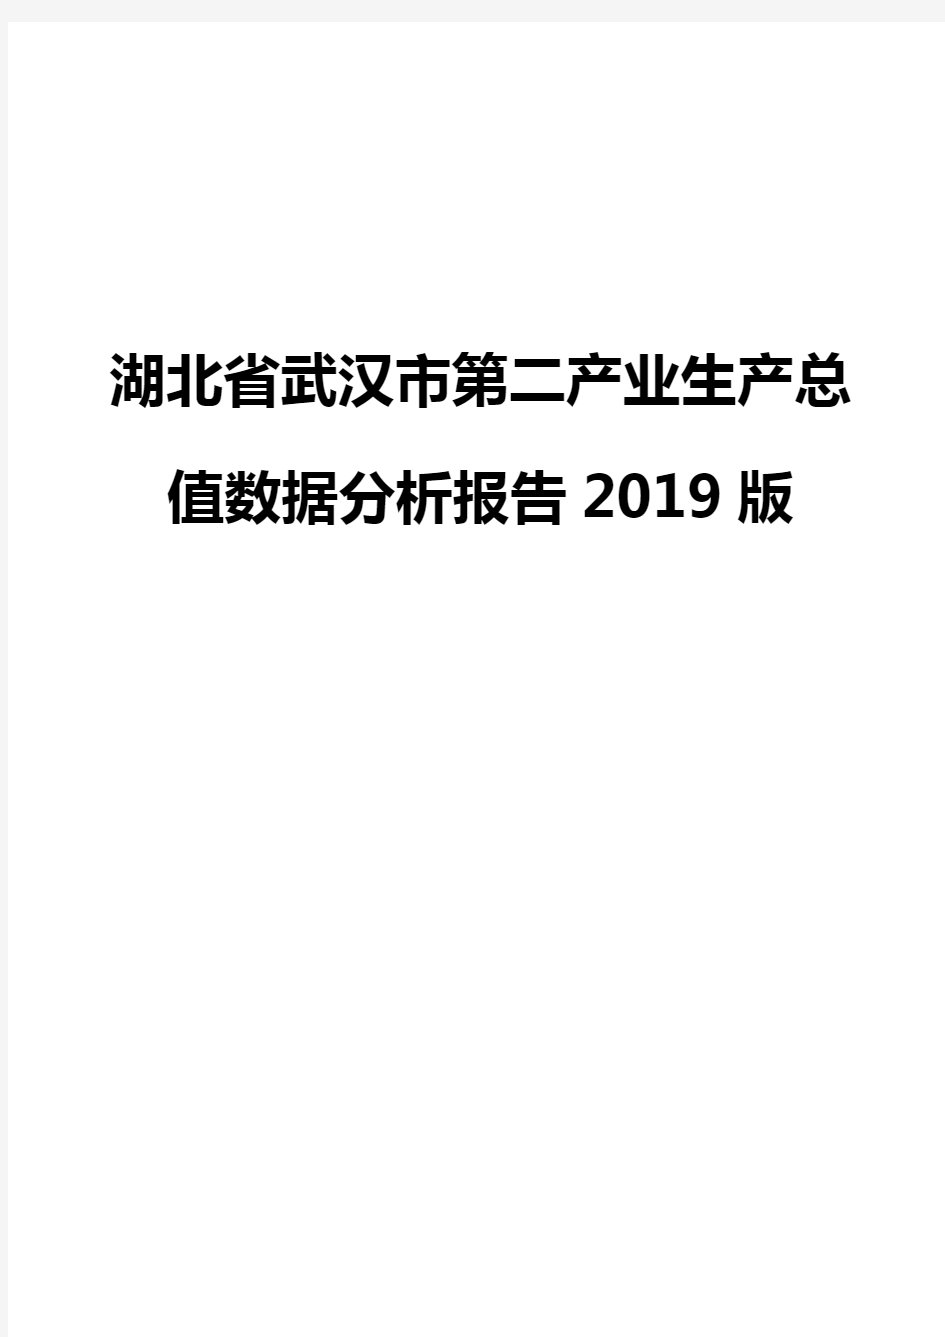 湖北省武汉市第二产业生产总值数据分析报告2019版